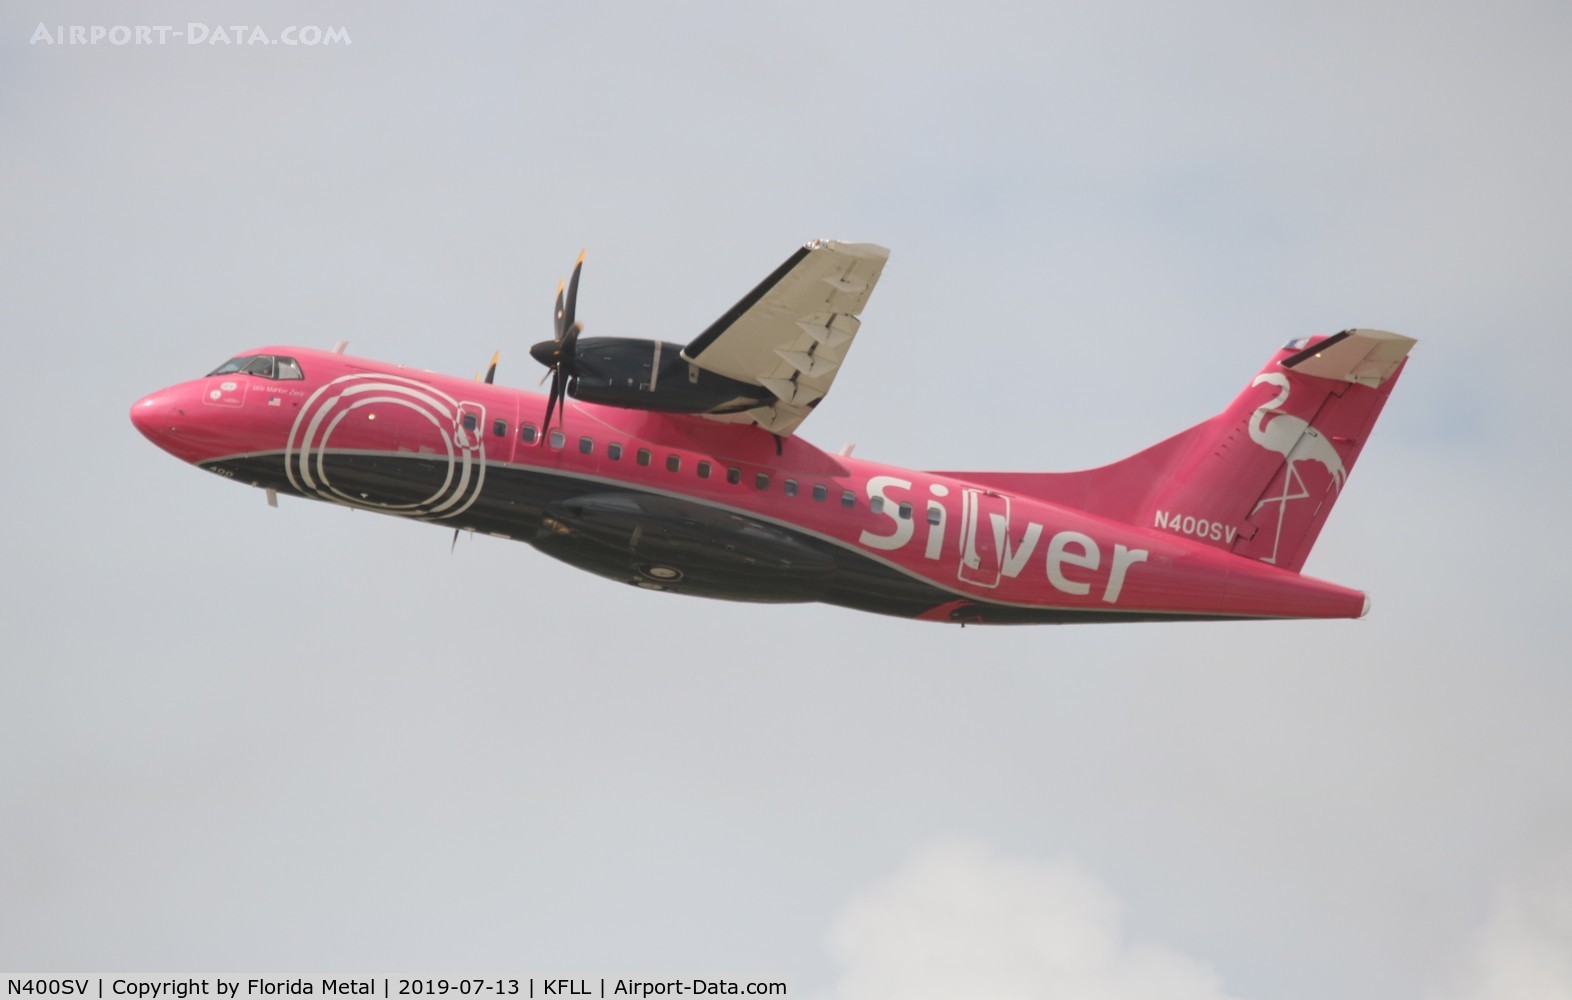 N400SV, 2017 ATR 42-500 C/N 1214, Silver Airways